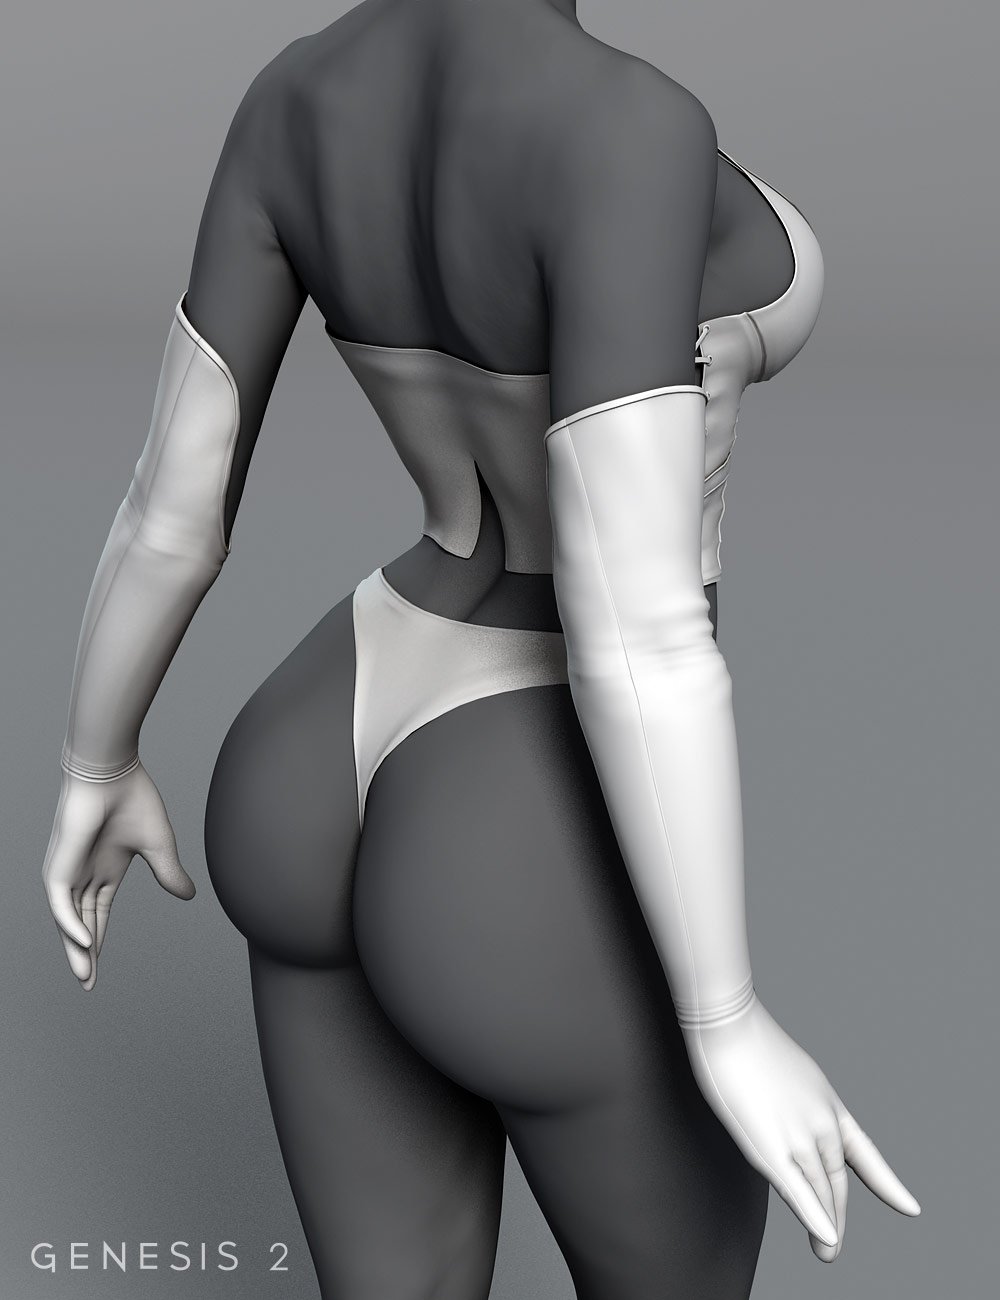 Dark Heart for Genesis 2 Female(s) by: 4blueyes, 3D Models by Daz 3D